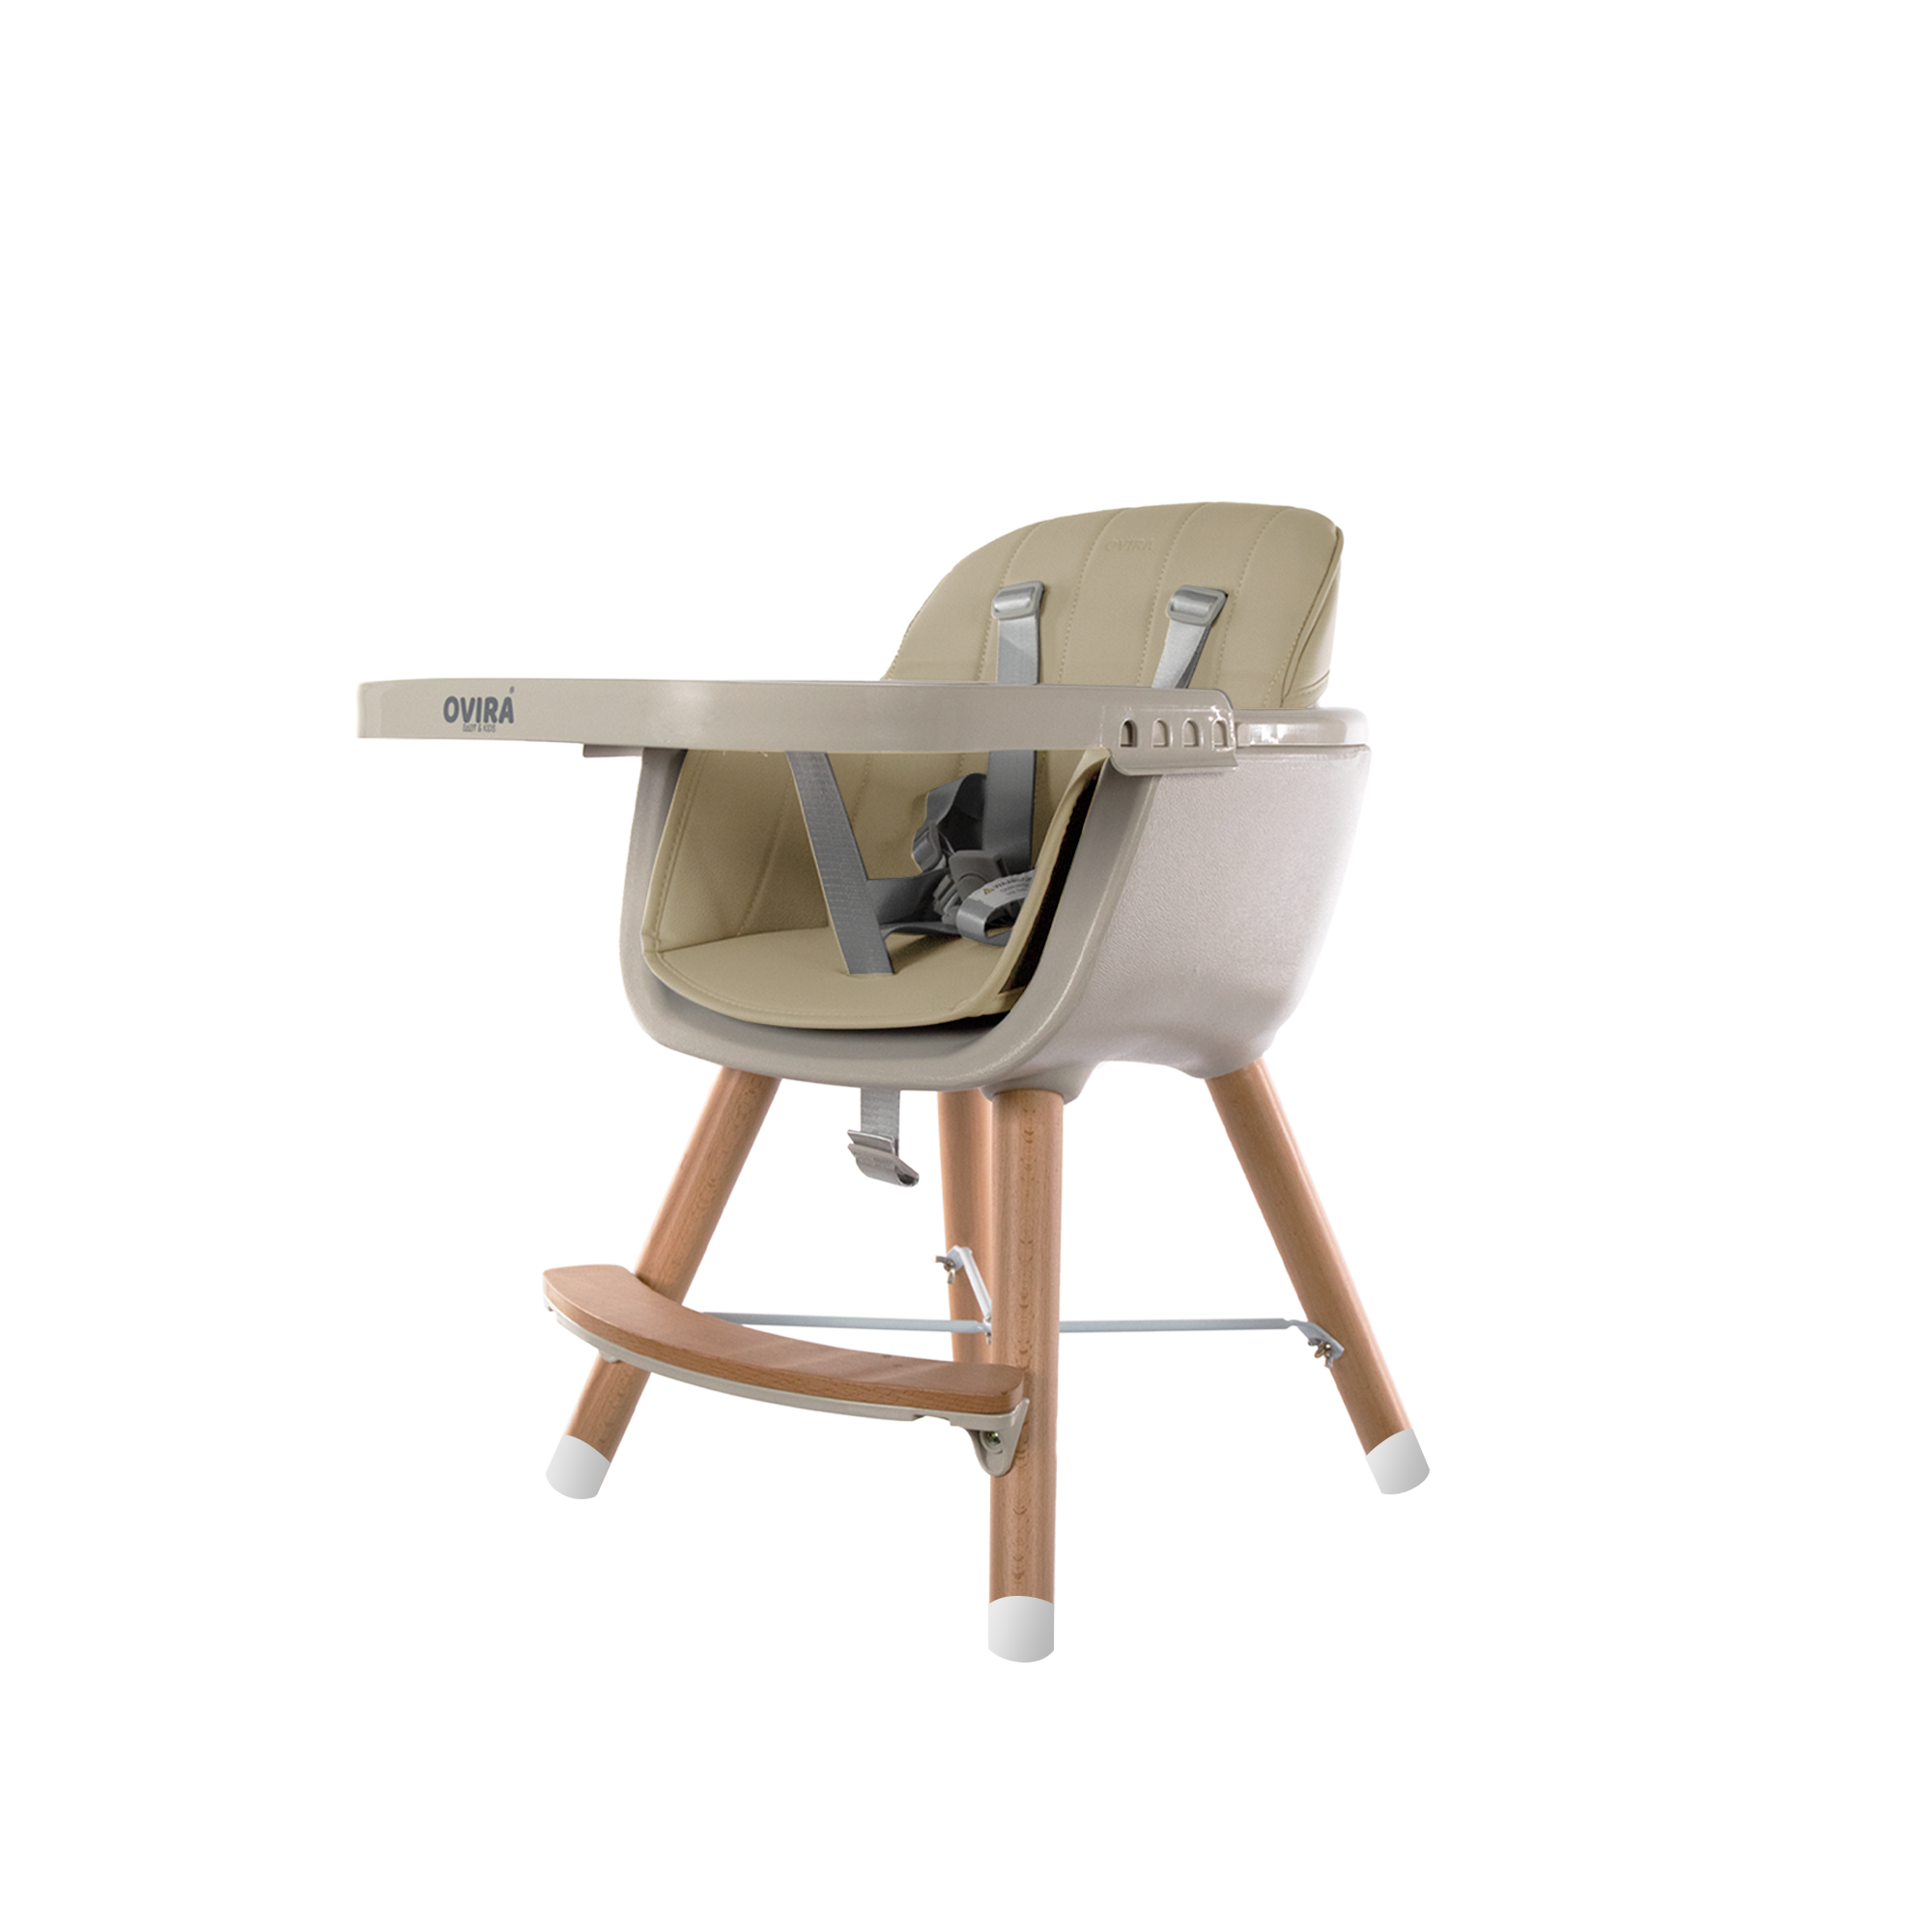 Voorlopige Arbeid verkiezen OVIRA - Kinderstoel - 2 in 1 - Meegroeistoel - Wooden beige - VOTIRA -  Lifestyle en Wonen